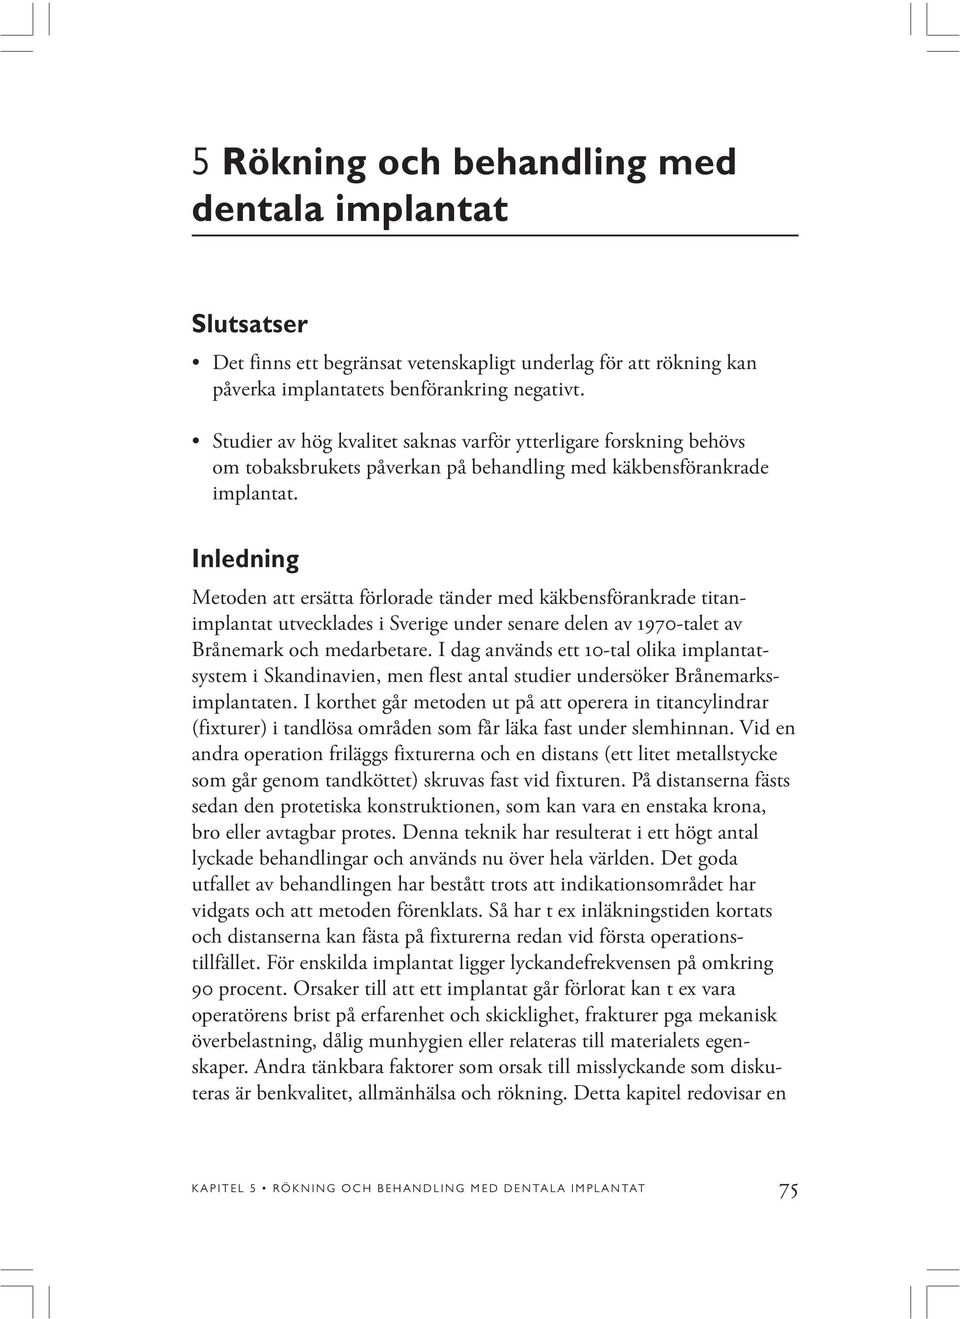 Inledning Metoden att ersätta förlorade tänder med käkbensförankrade titanimplantat utvecklades i Sverige under senare delen av 1970-talet av Brånemark och medarbetare.